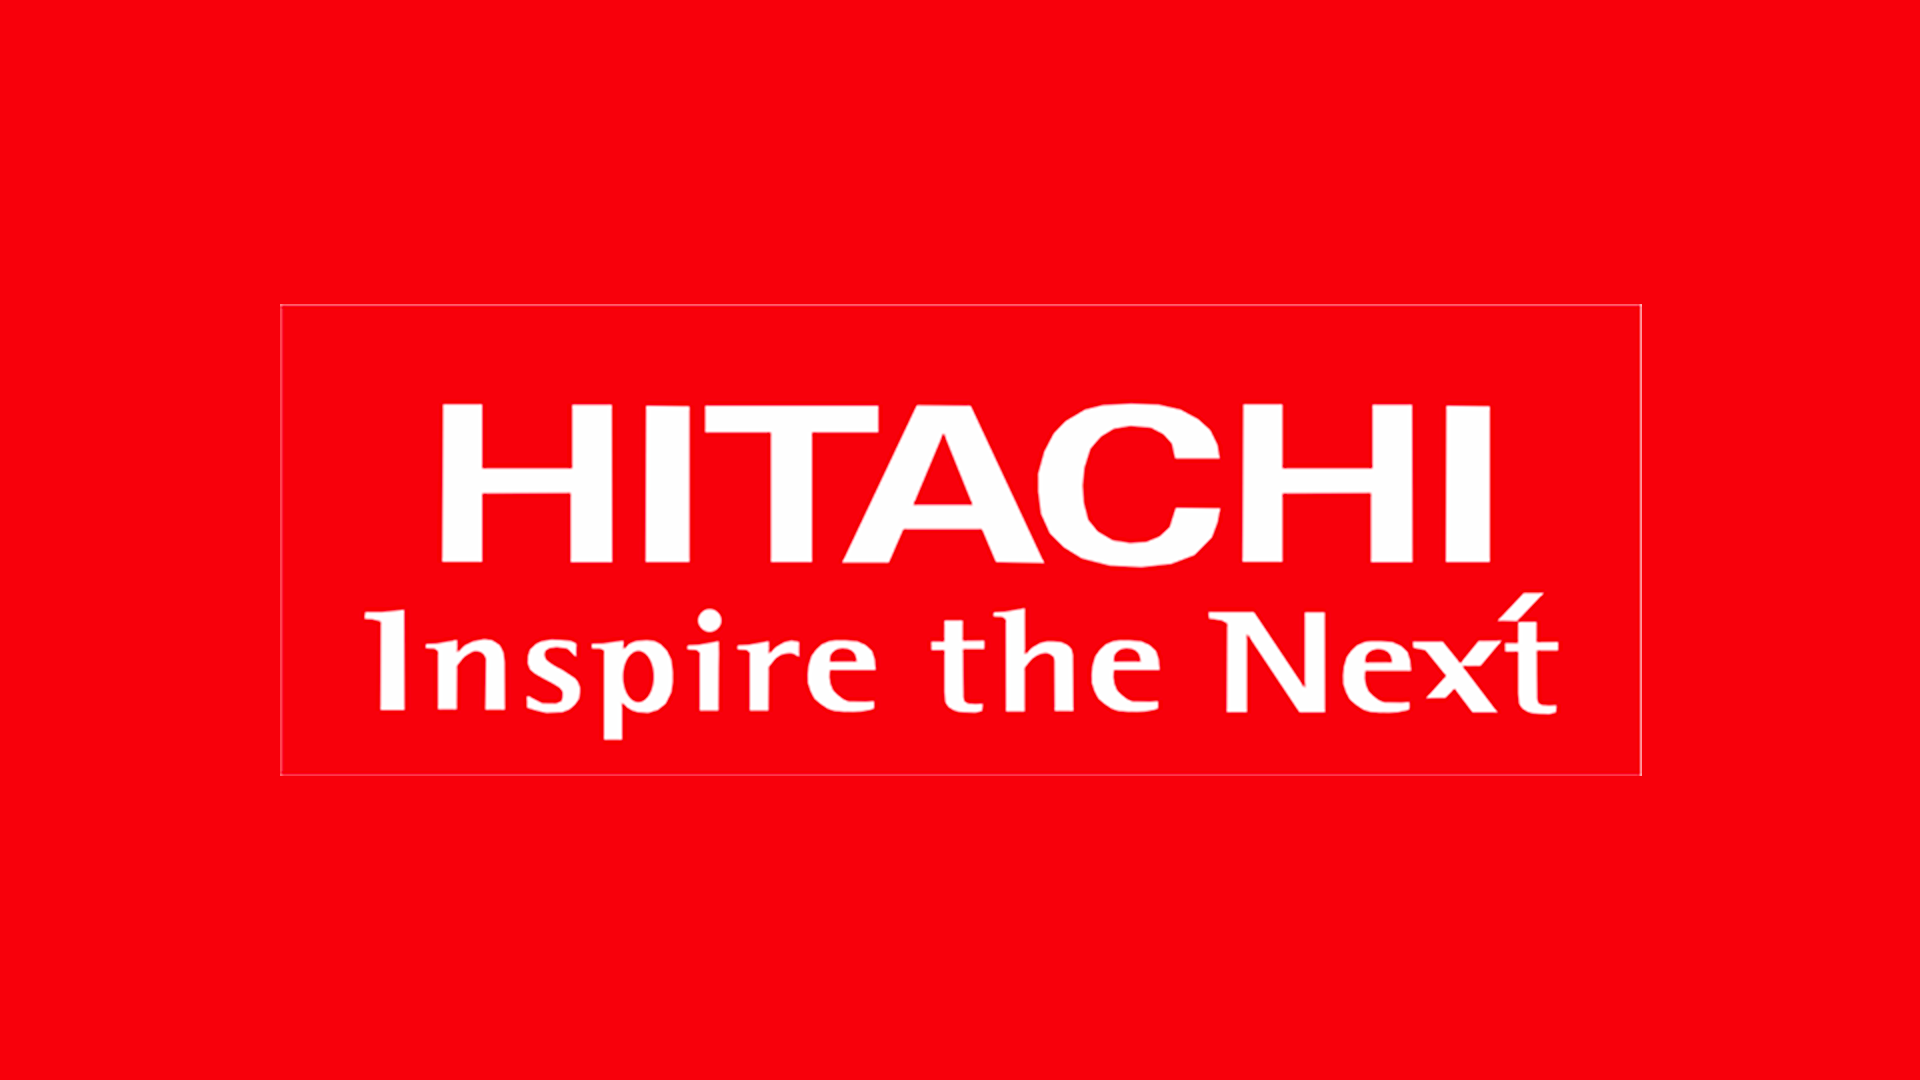 Hitachi logo that says 